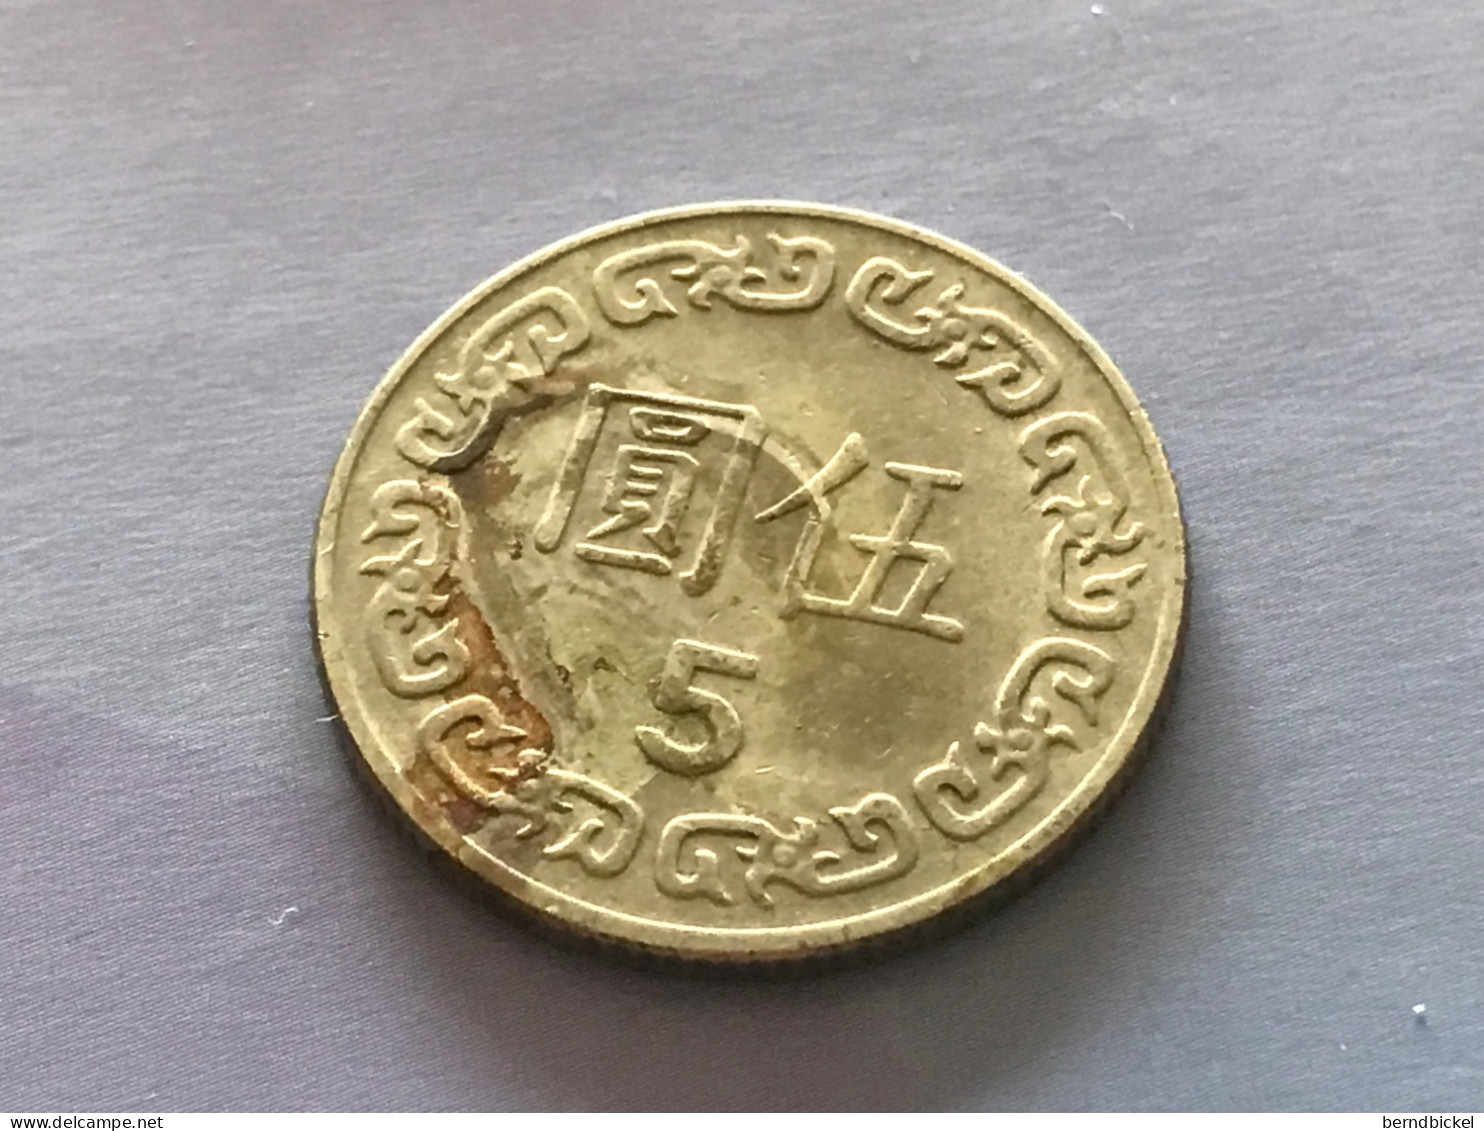 Münze Münzen Umlaufmünze Taiwan 5 Dollar 1984 - Taiwan